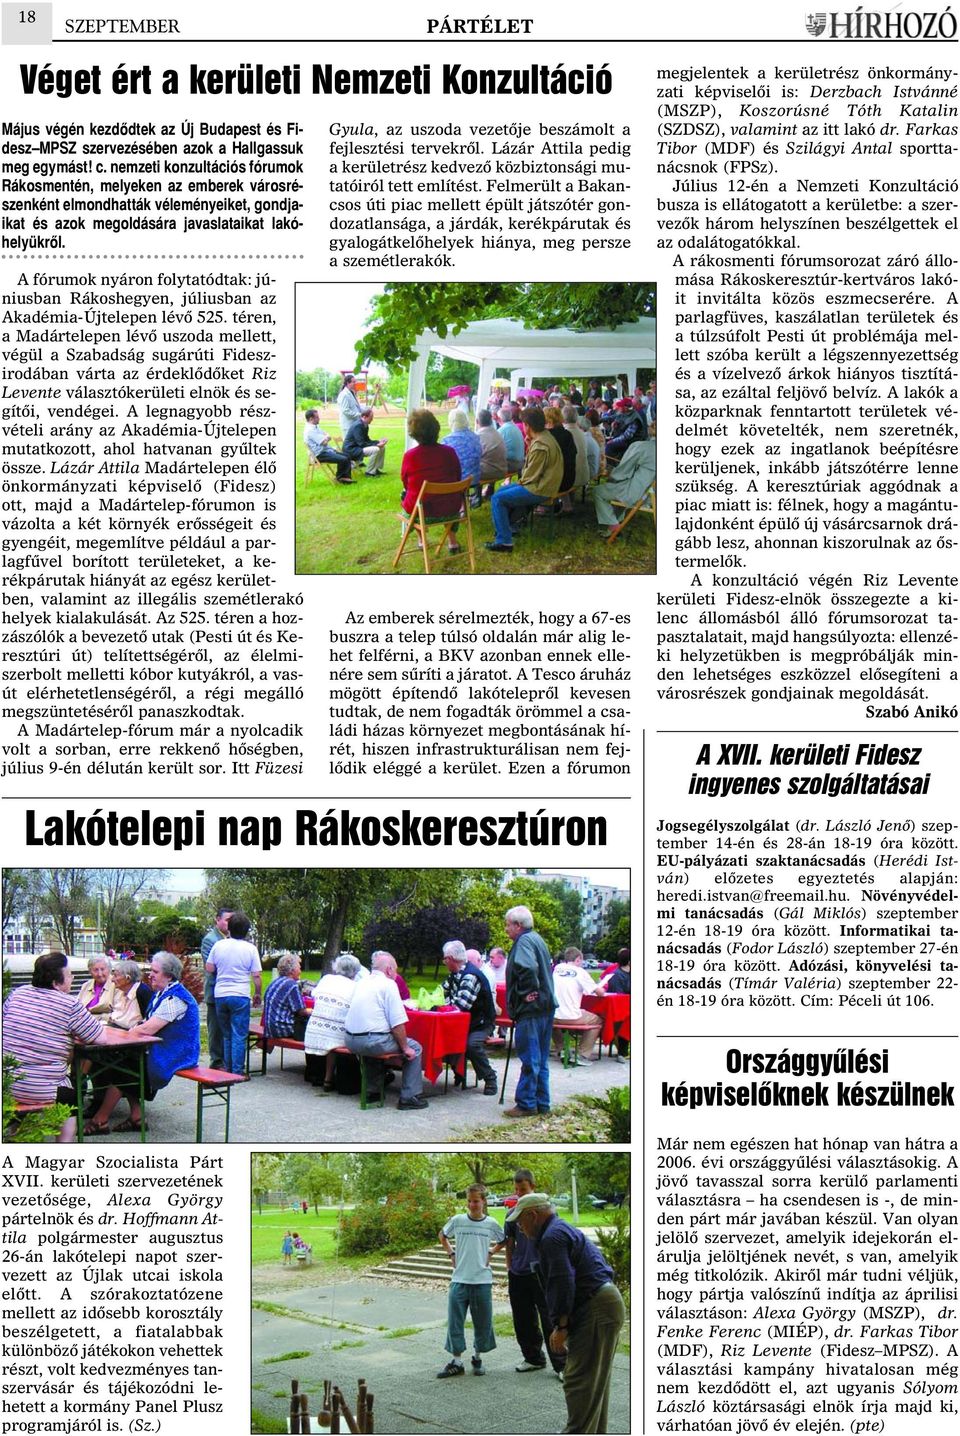 A fórumok nyáron folytatódtak: júniusban Rákoshegyen, júliusban az Akadémia-Újtelepen lévõ 525.